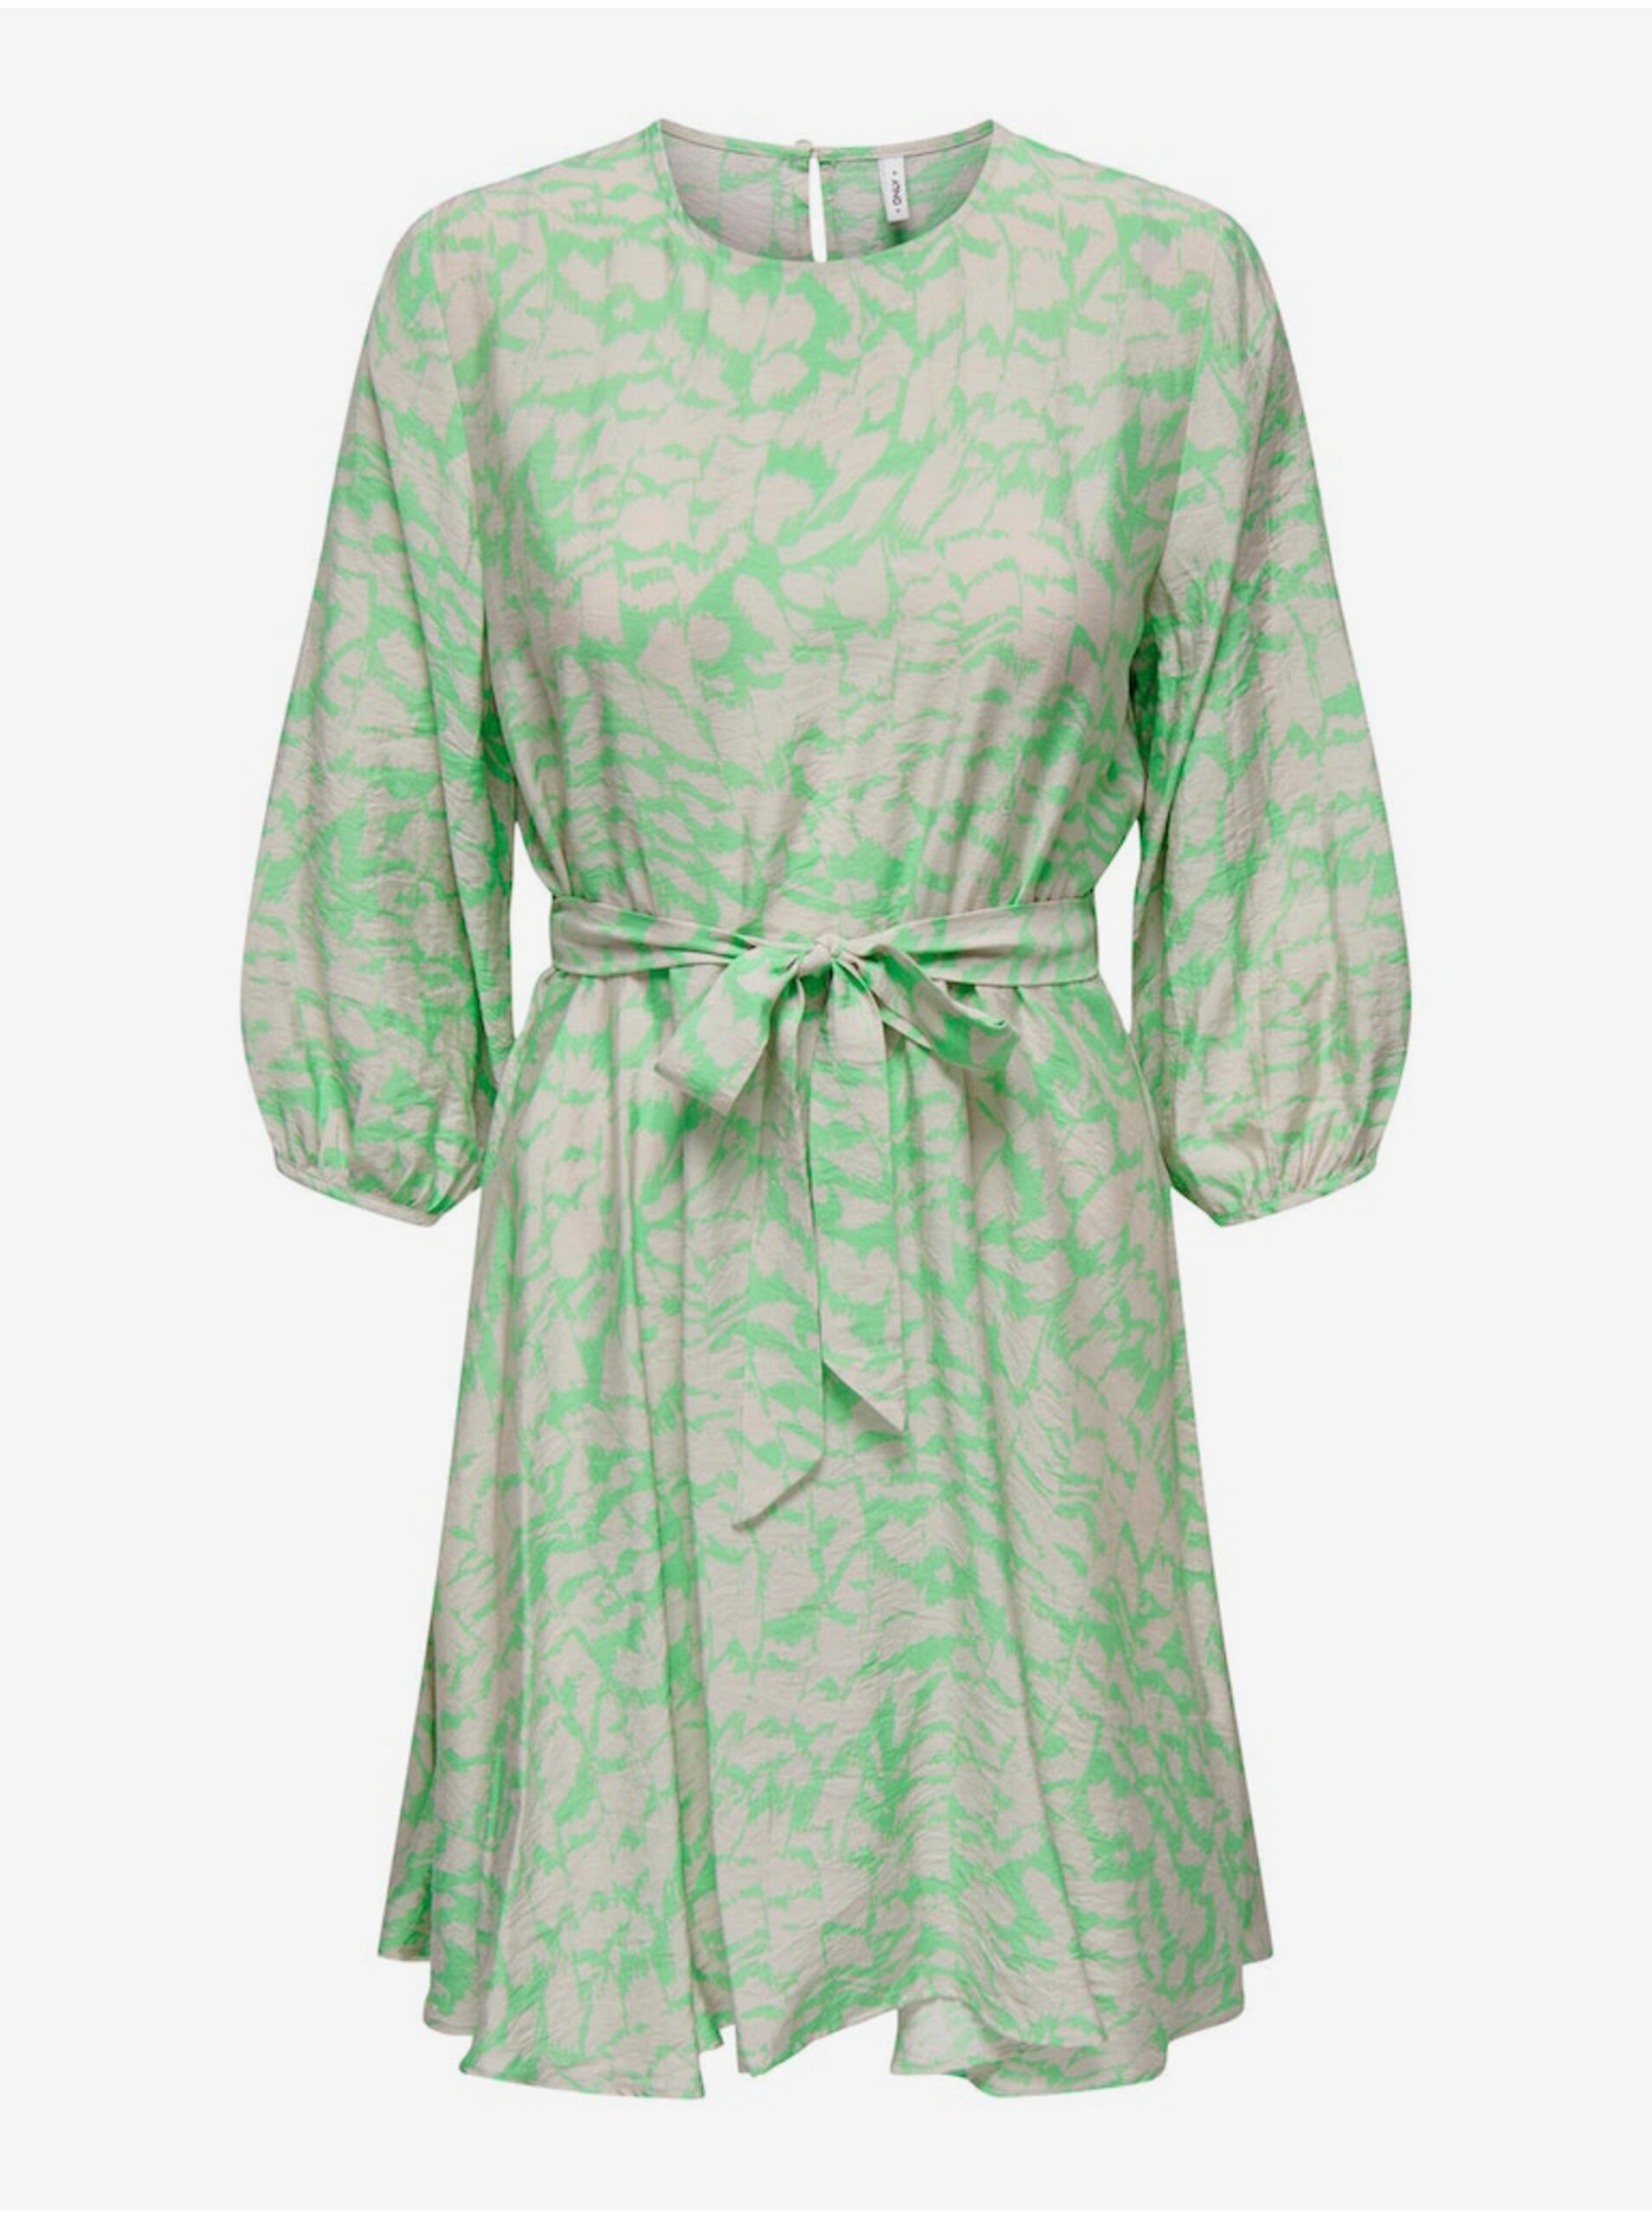 Světle zelené dámské vzorované šaty ONLY Celina - Dámské